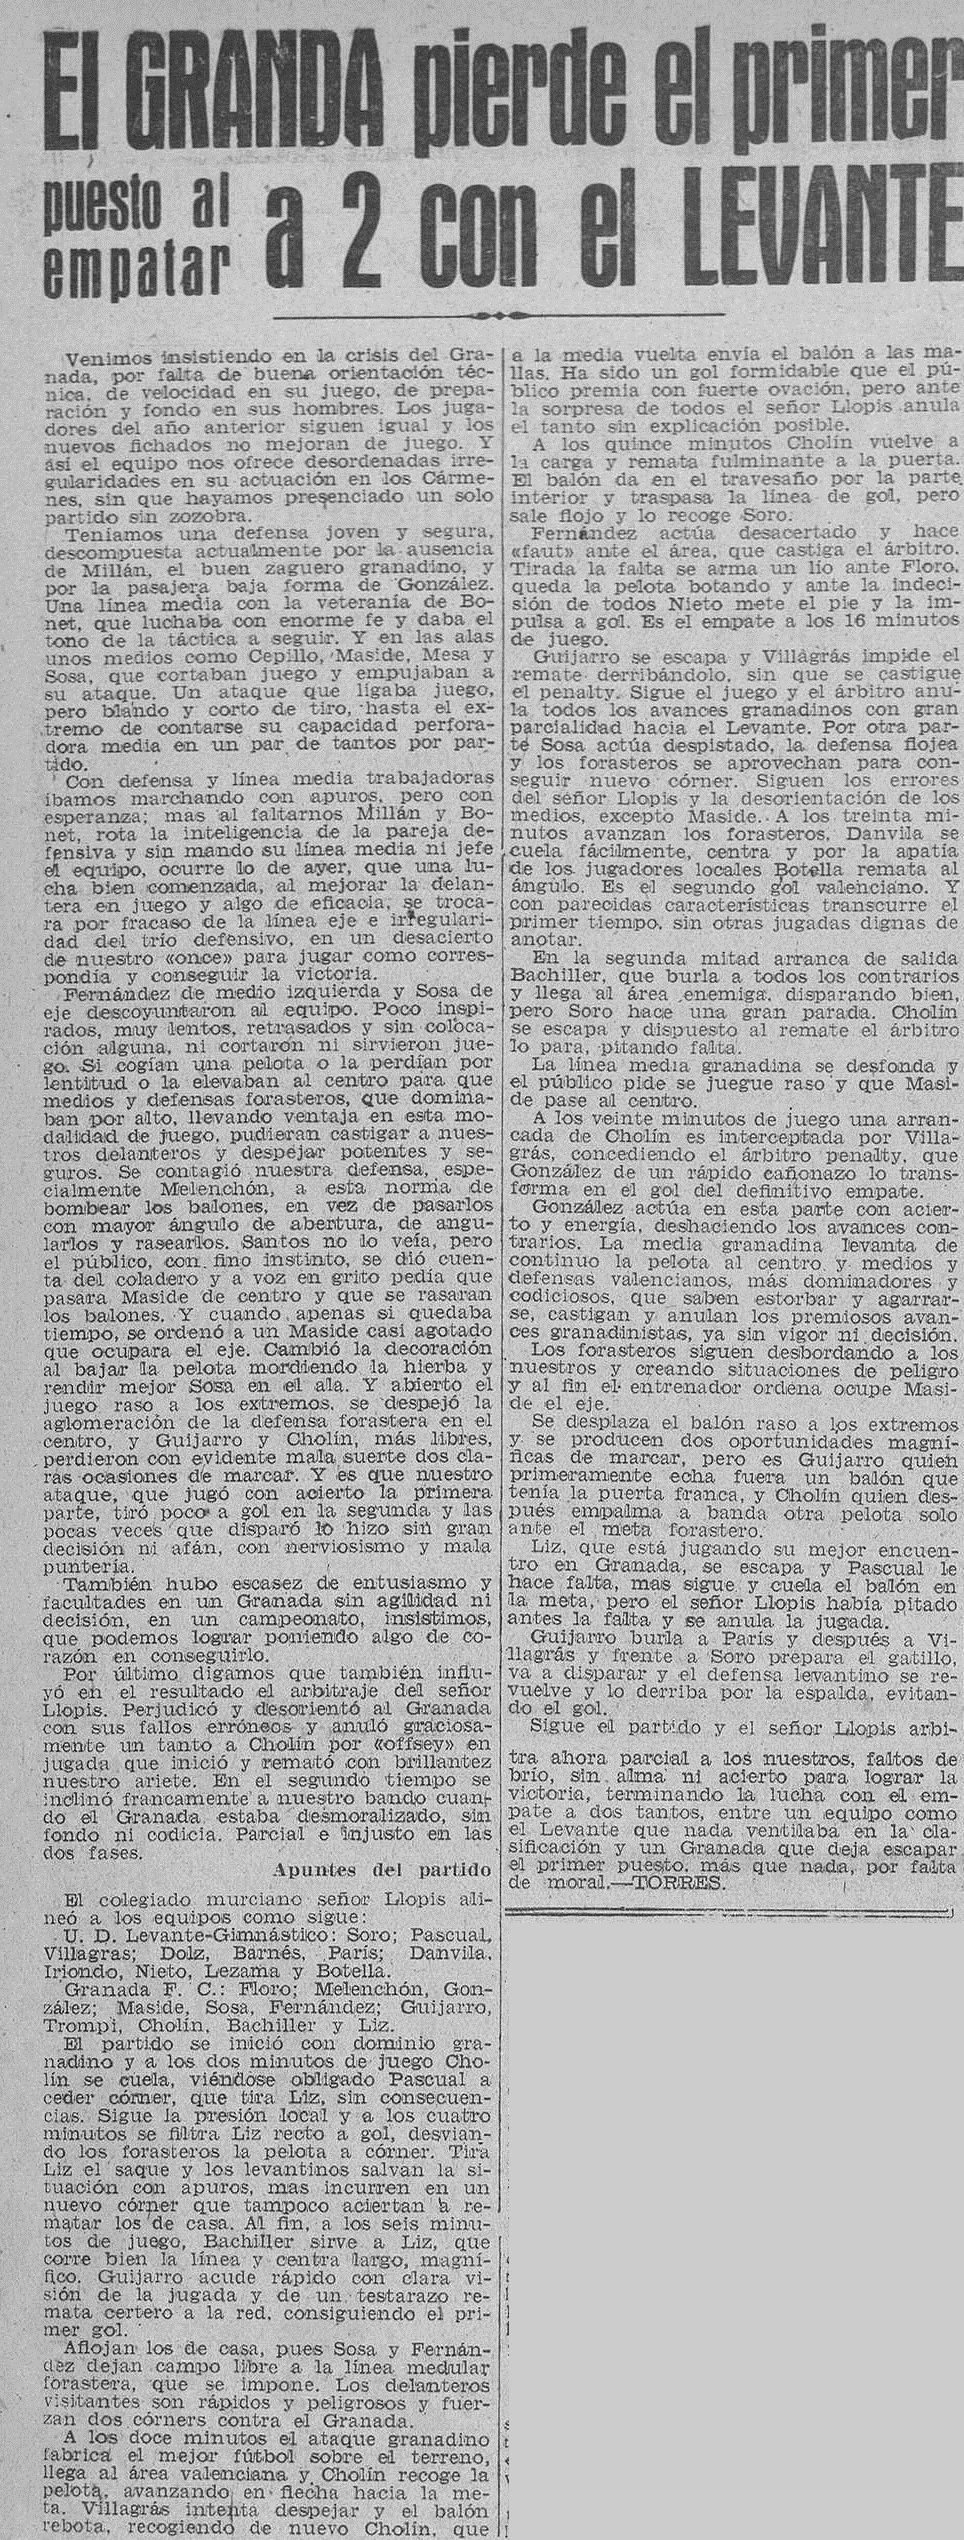 1941.01.19 (19 января 1941), Гранада - Леанте, 2-2.jpg